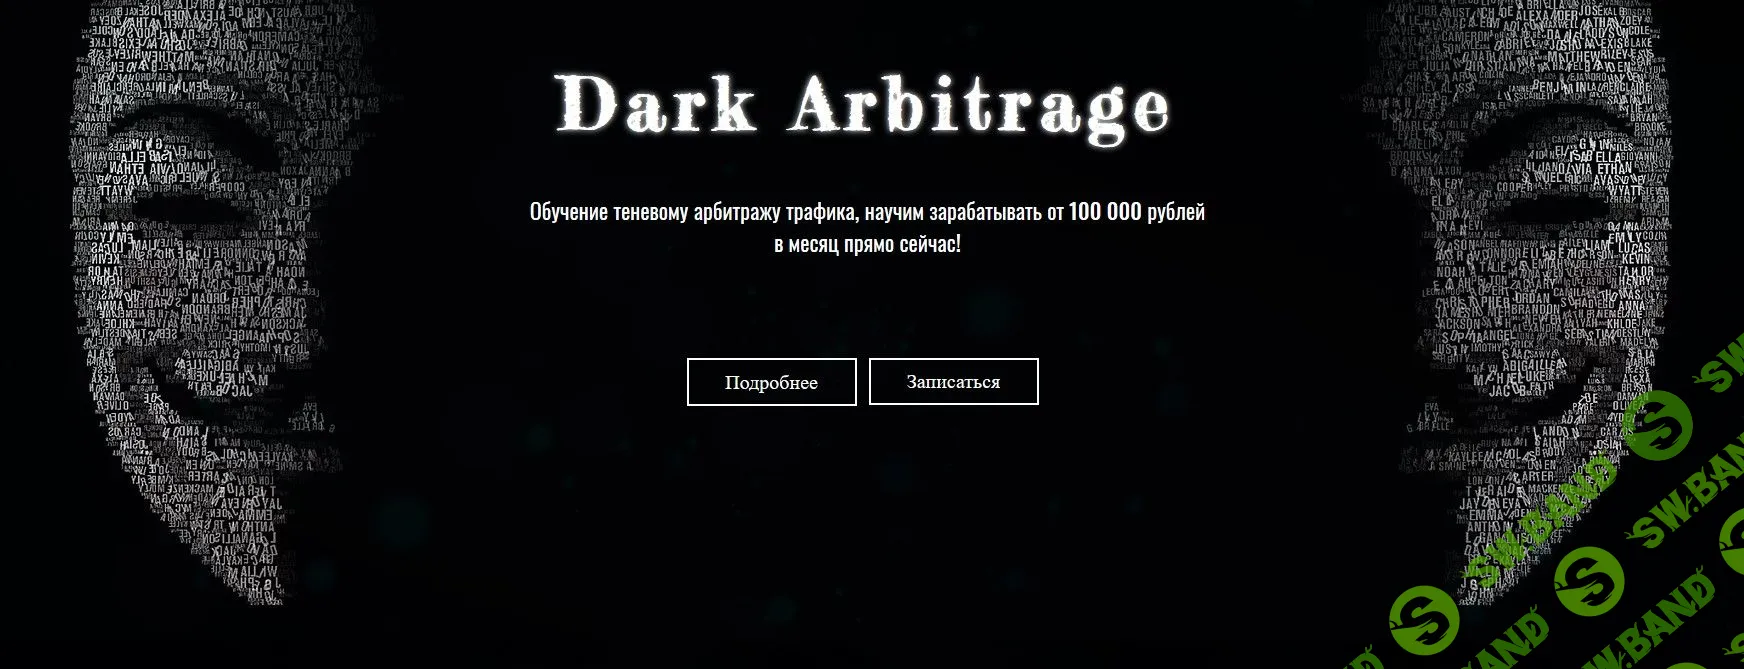 [Dark Arbitrage] Обучение теневому арбитражу трафика, научим зарабатывать от 100 000 рублей в месяц прямо сейчас (2019)